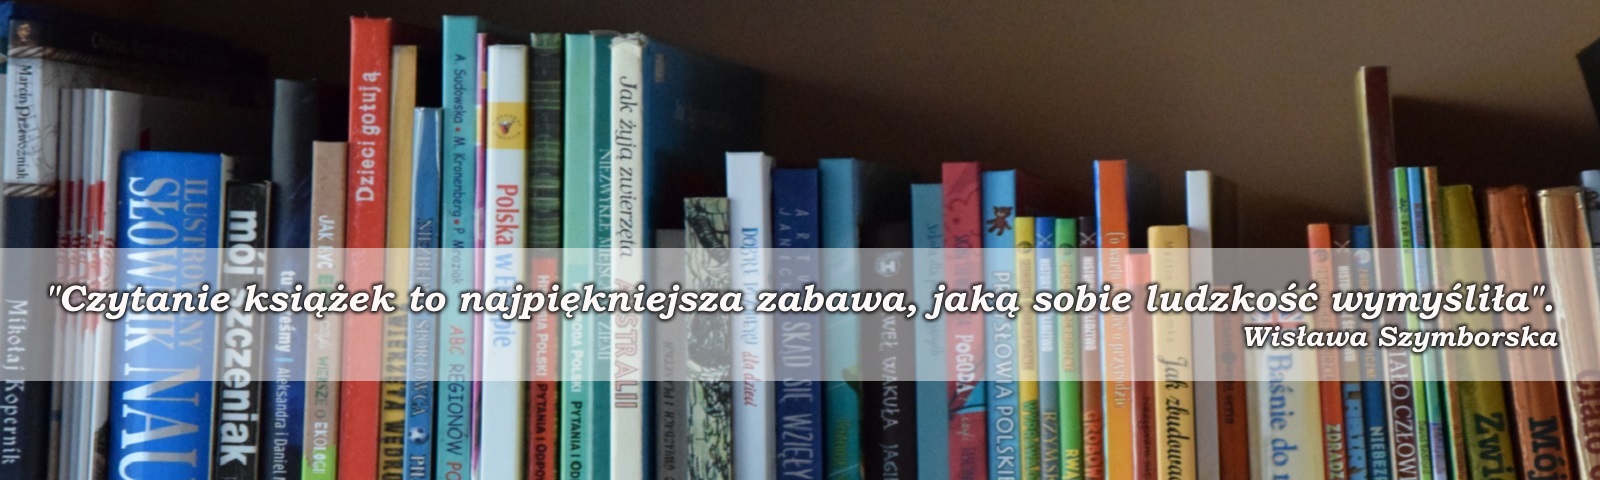 Zdjęcie z książkami ustawionymi na regale. Na zdjęciu cytat Wisławy Szybborskiej: Czytanie książek to najpiękniejsza zabawa, jaką sobie ludzkość wymyśliła